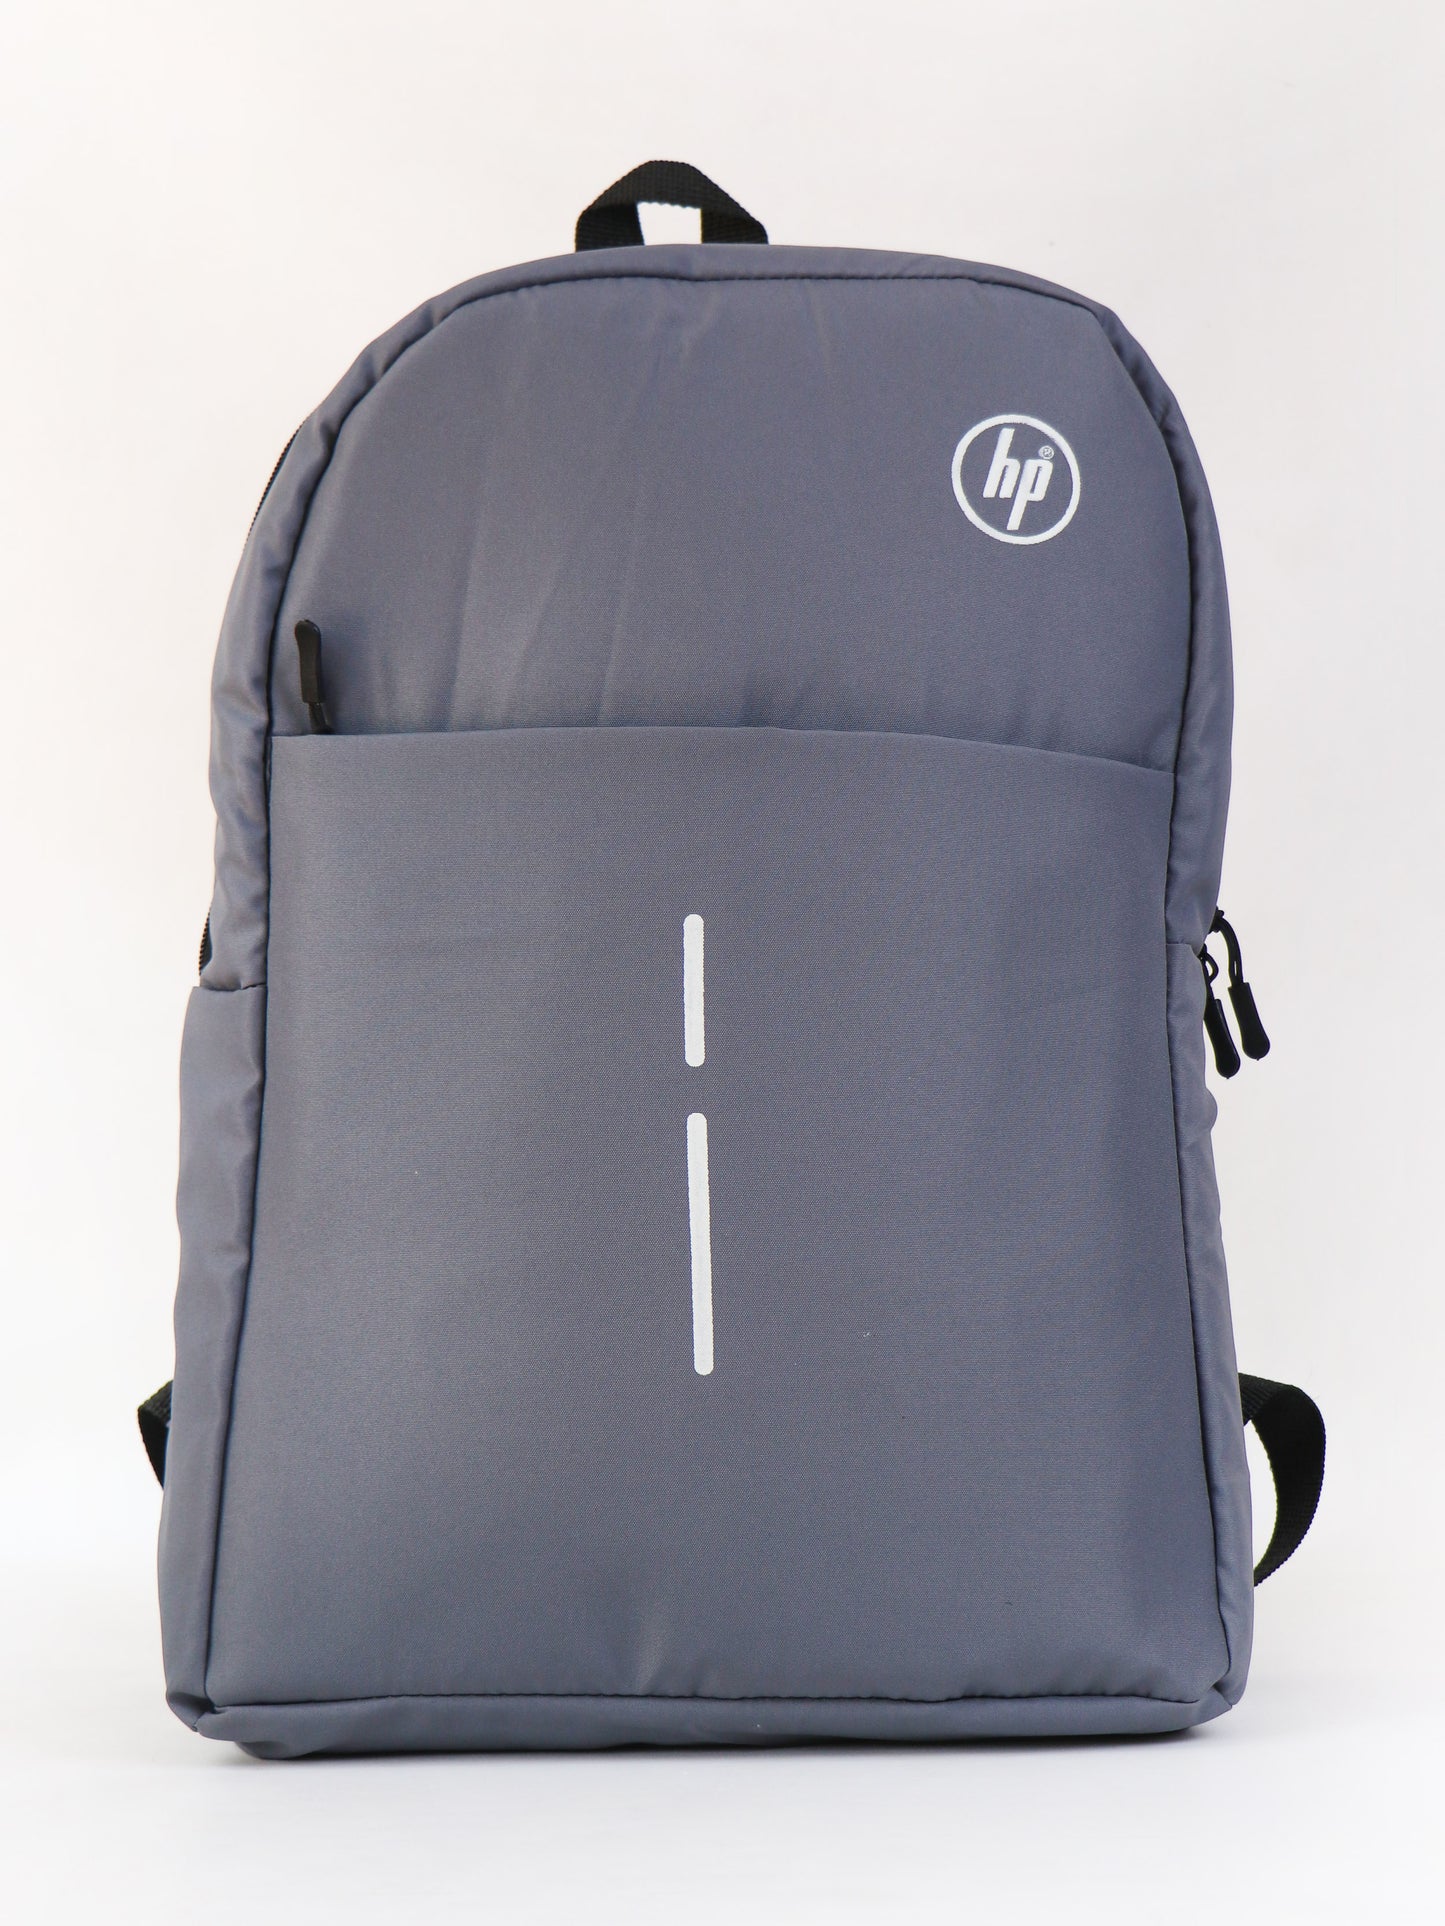 LB03 HP Laptop Bag Value Backpack Grey